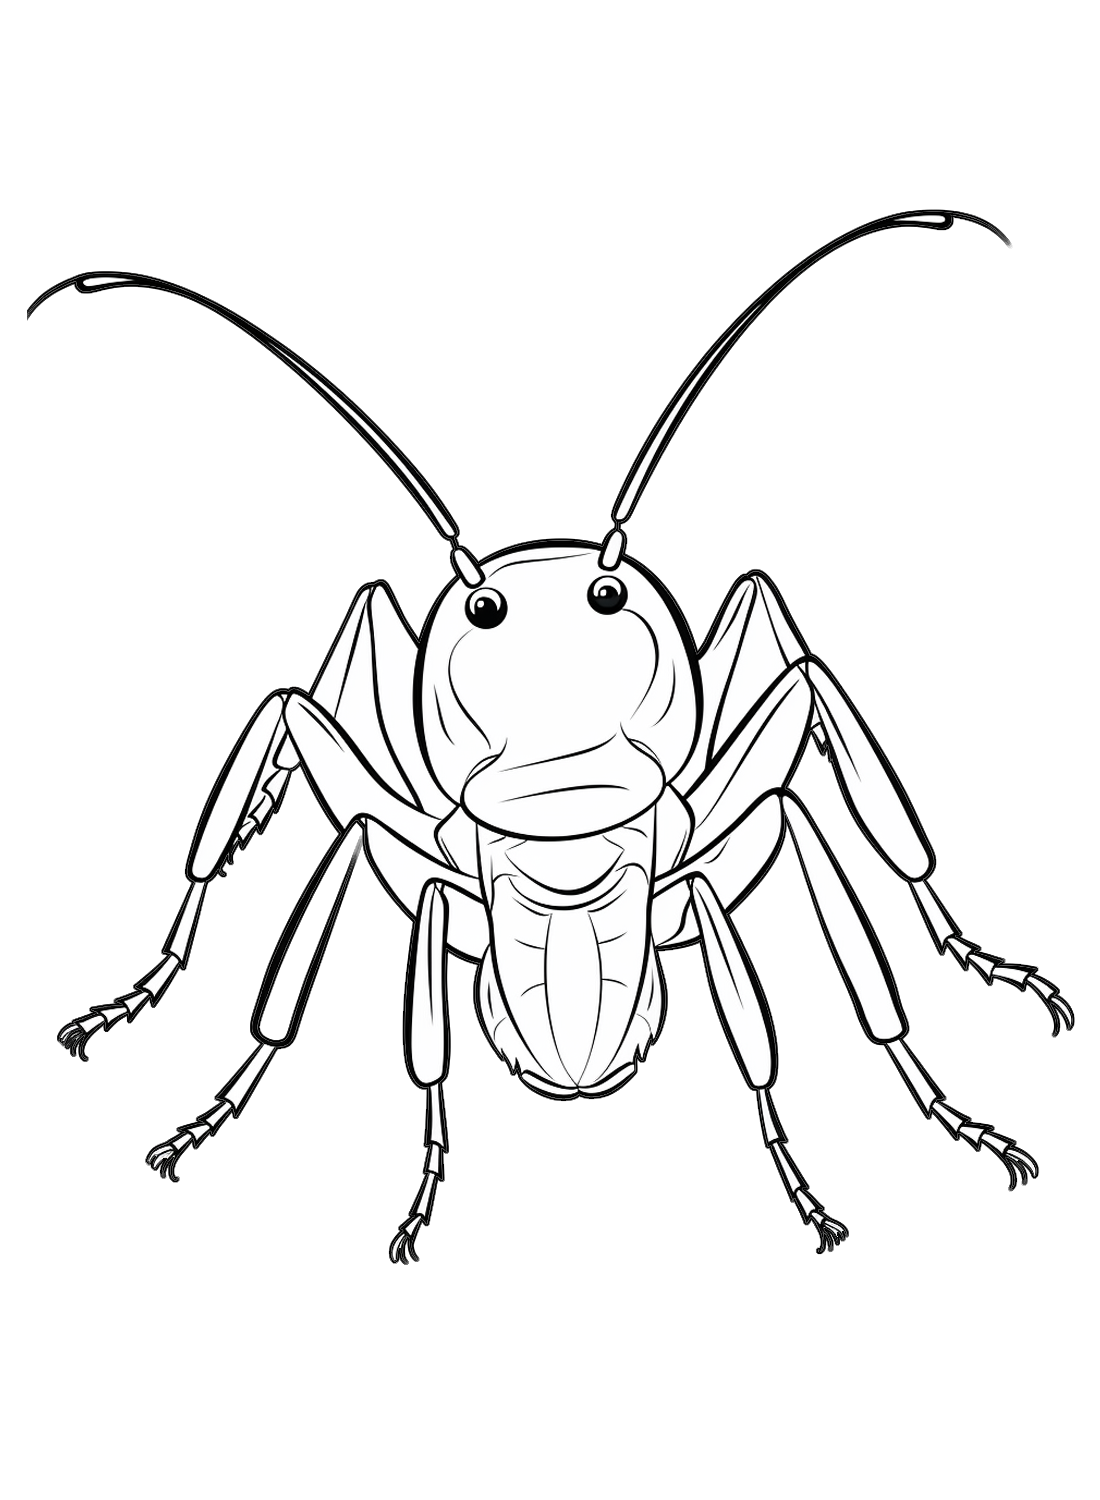 De kakkerlak uit Kakkerlak